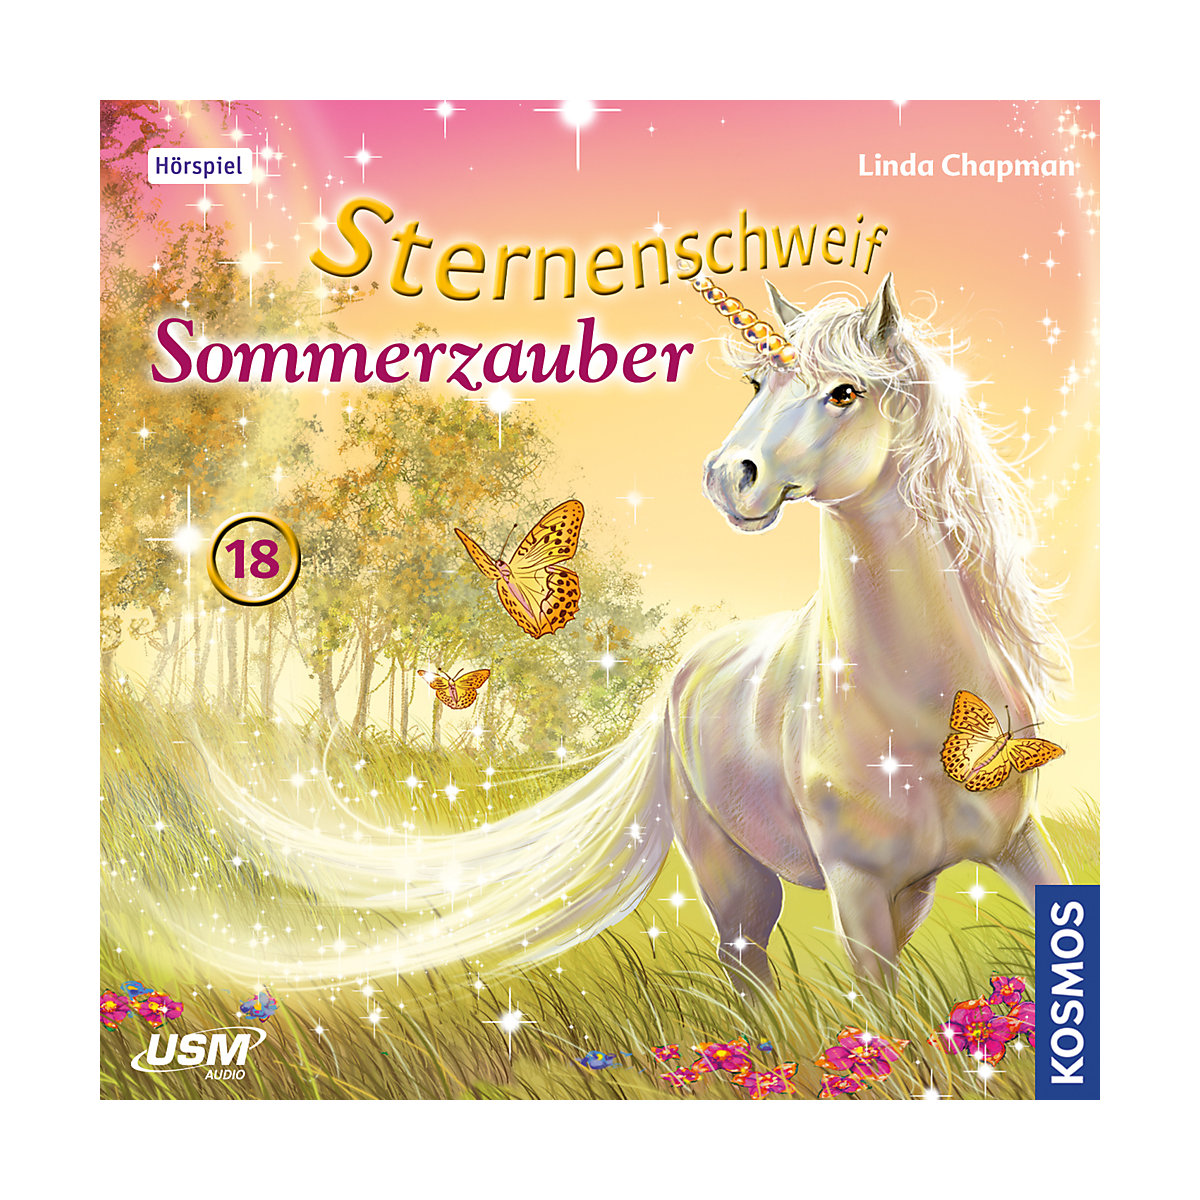 United Soft Media CD Sternenschweif 18: Sommerzauber